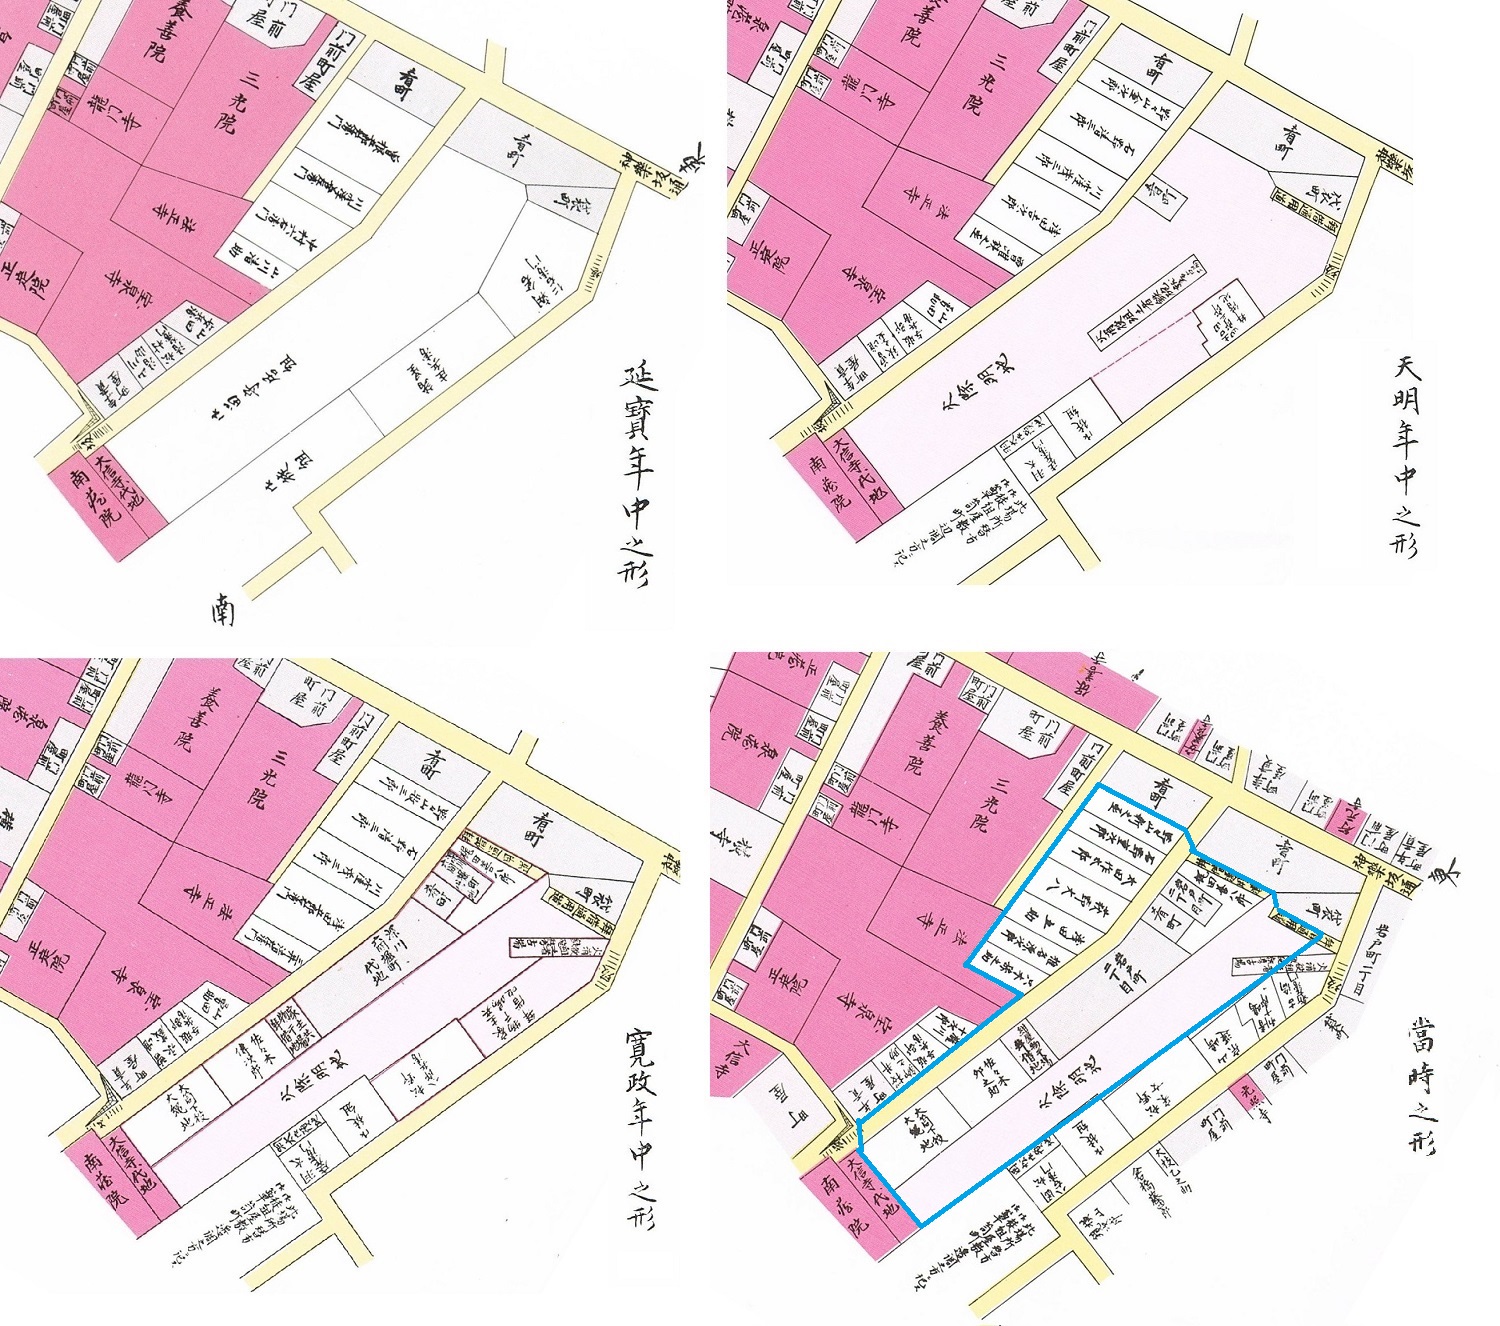 江戸時代の岩戸町。江戸時代の青色の多角形が神社仏閣を除いて明治初期の岩戸町に。左上は延宝年間（1673-81）で留守居があり、右上は天明年間（1781-88）の火除地、左下は寛政年間（1789-1817年）で深川六間堀町の代地が付け加わり、右下は当時（嘉永５年、1852年）。